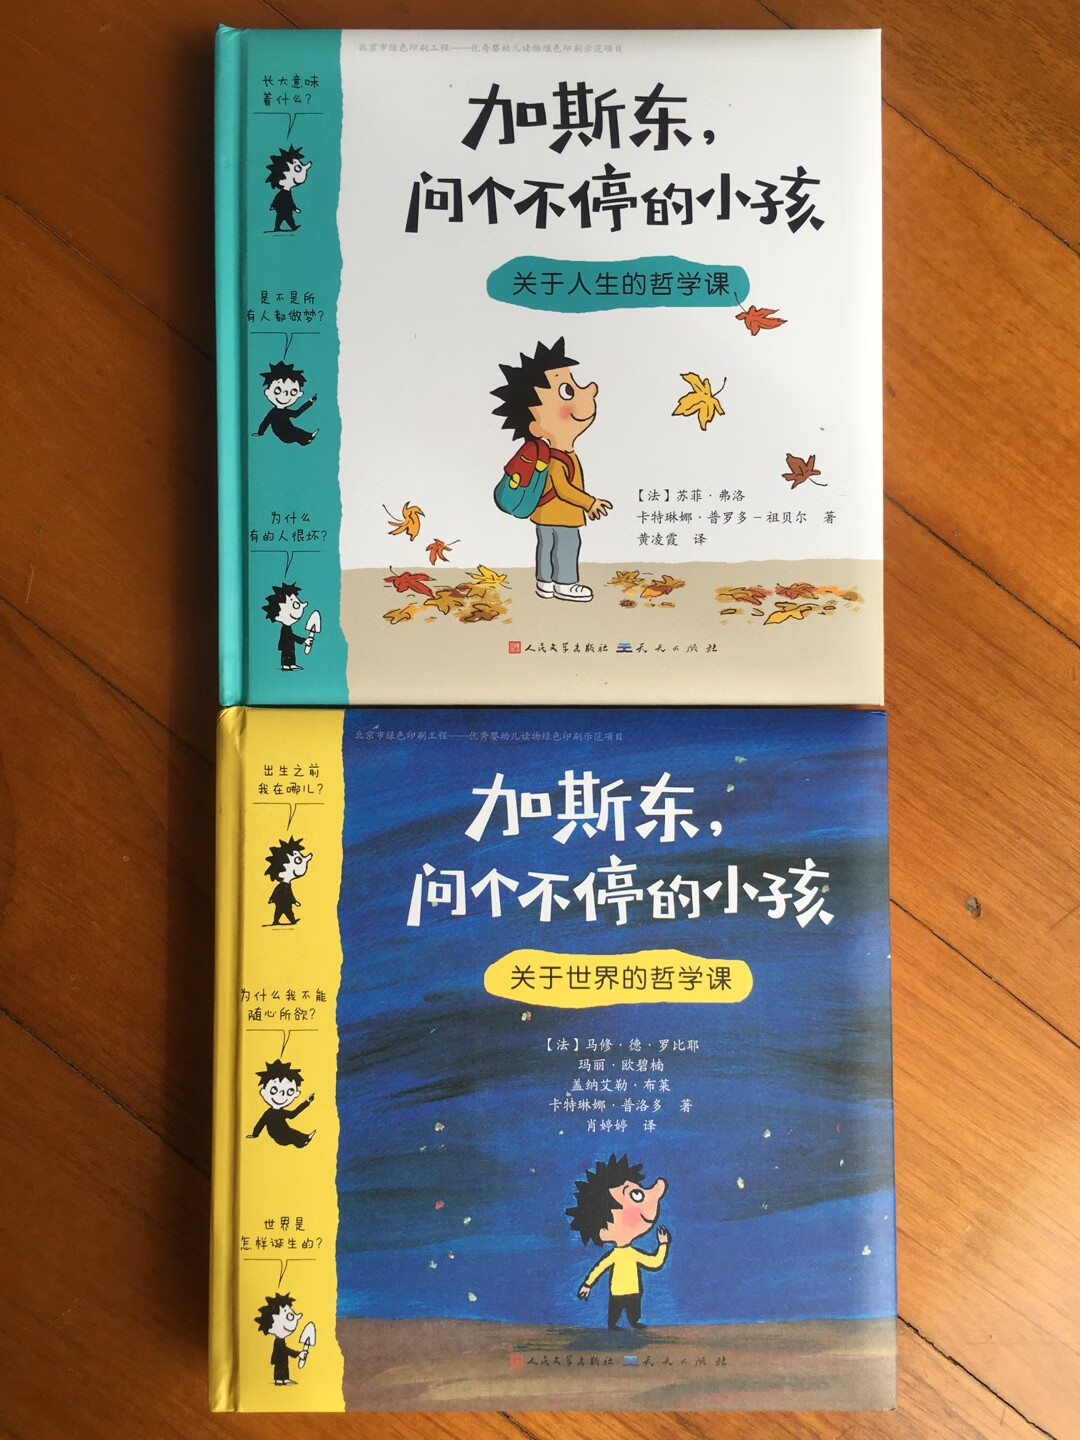 虽然今年双十一图书大促活动不是很给力，但还是买了一堆，这套书是中英文双语的，翻译的很好，读起来朗朗上口，经常给孩子念书，自己的朗诵水平都提高了不少